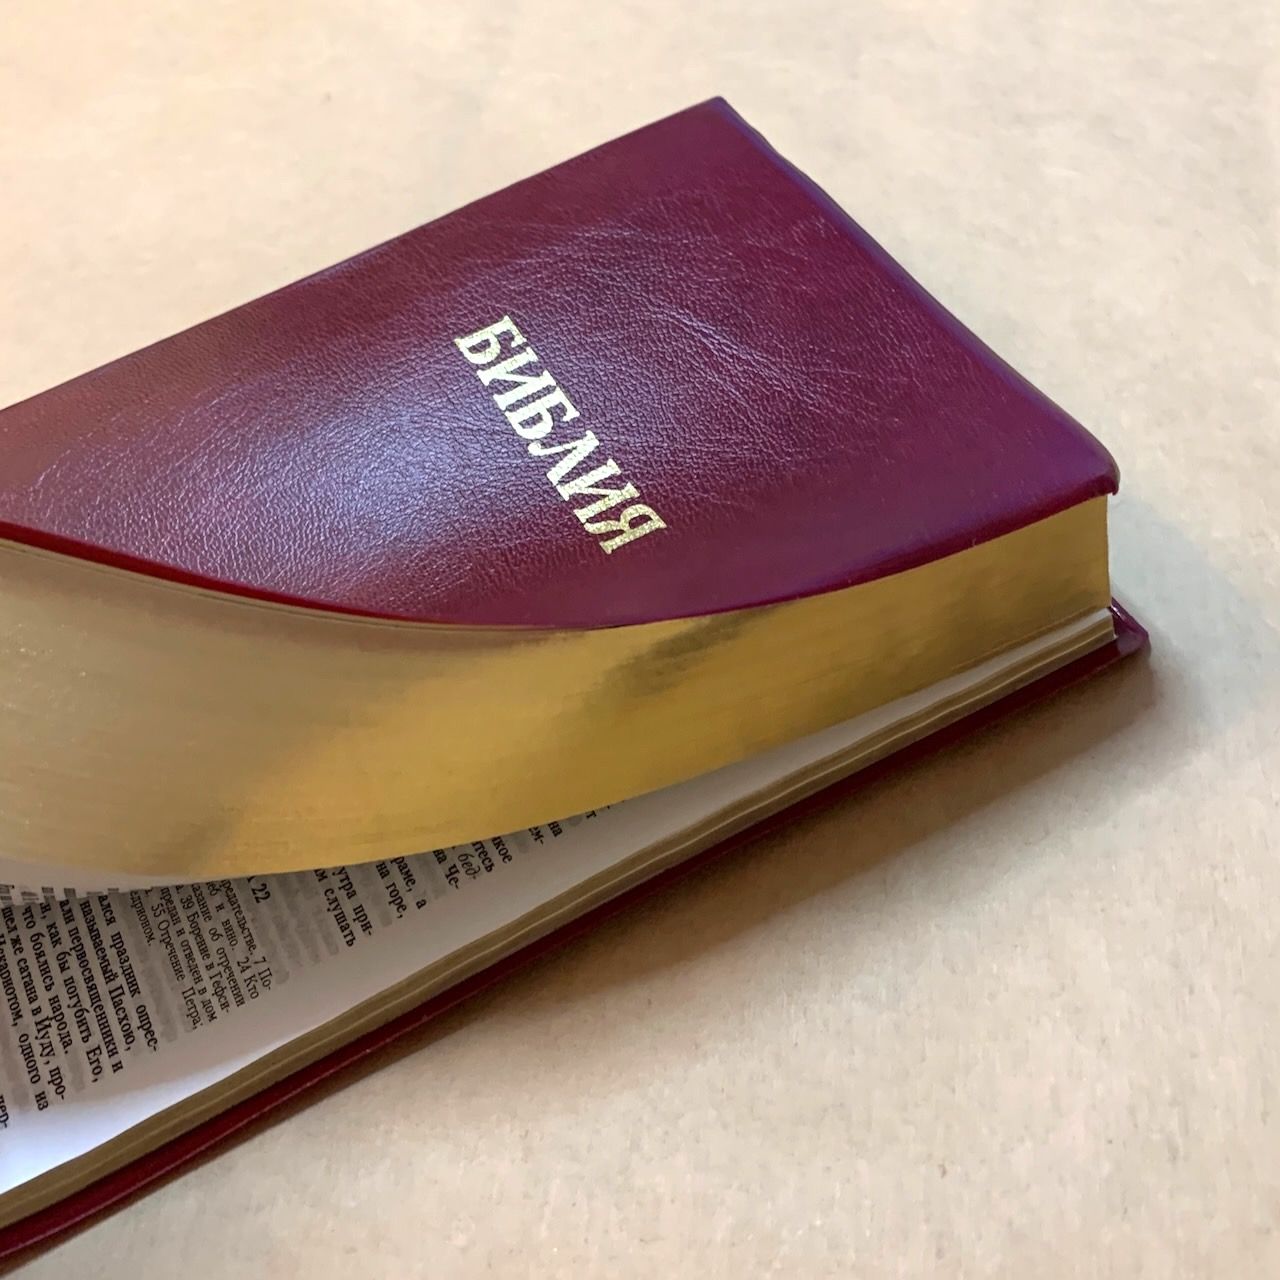 Библия 048 код E7 надпись "библия", переплет искусственной кожи, цвет бордо, формат 125*190 мм, золотой обрез, синодальный перевод, паралельные места по центру страницы, 2 закладки, шрифт 10-11 кегель, цветные карты